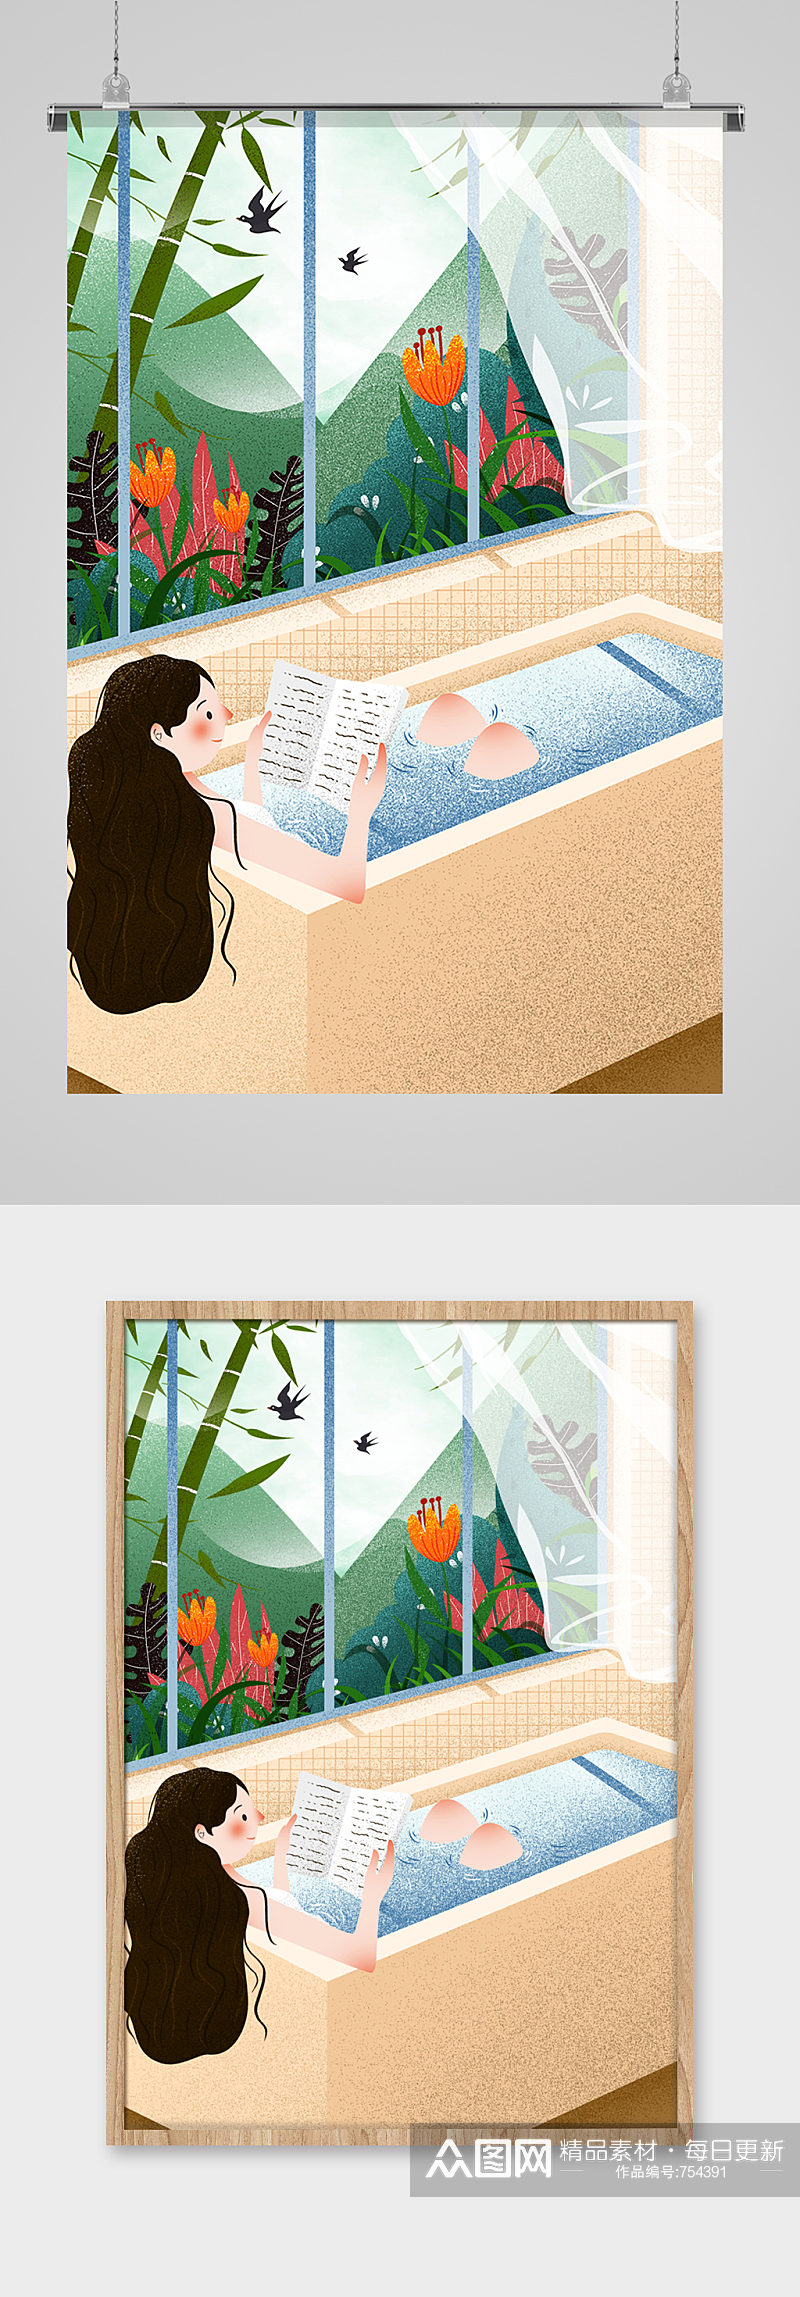 夏季洗澡看书的少女手绘插画素材